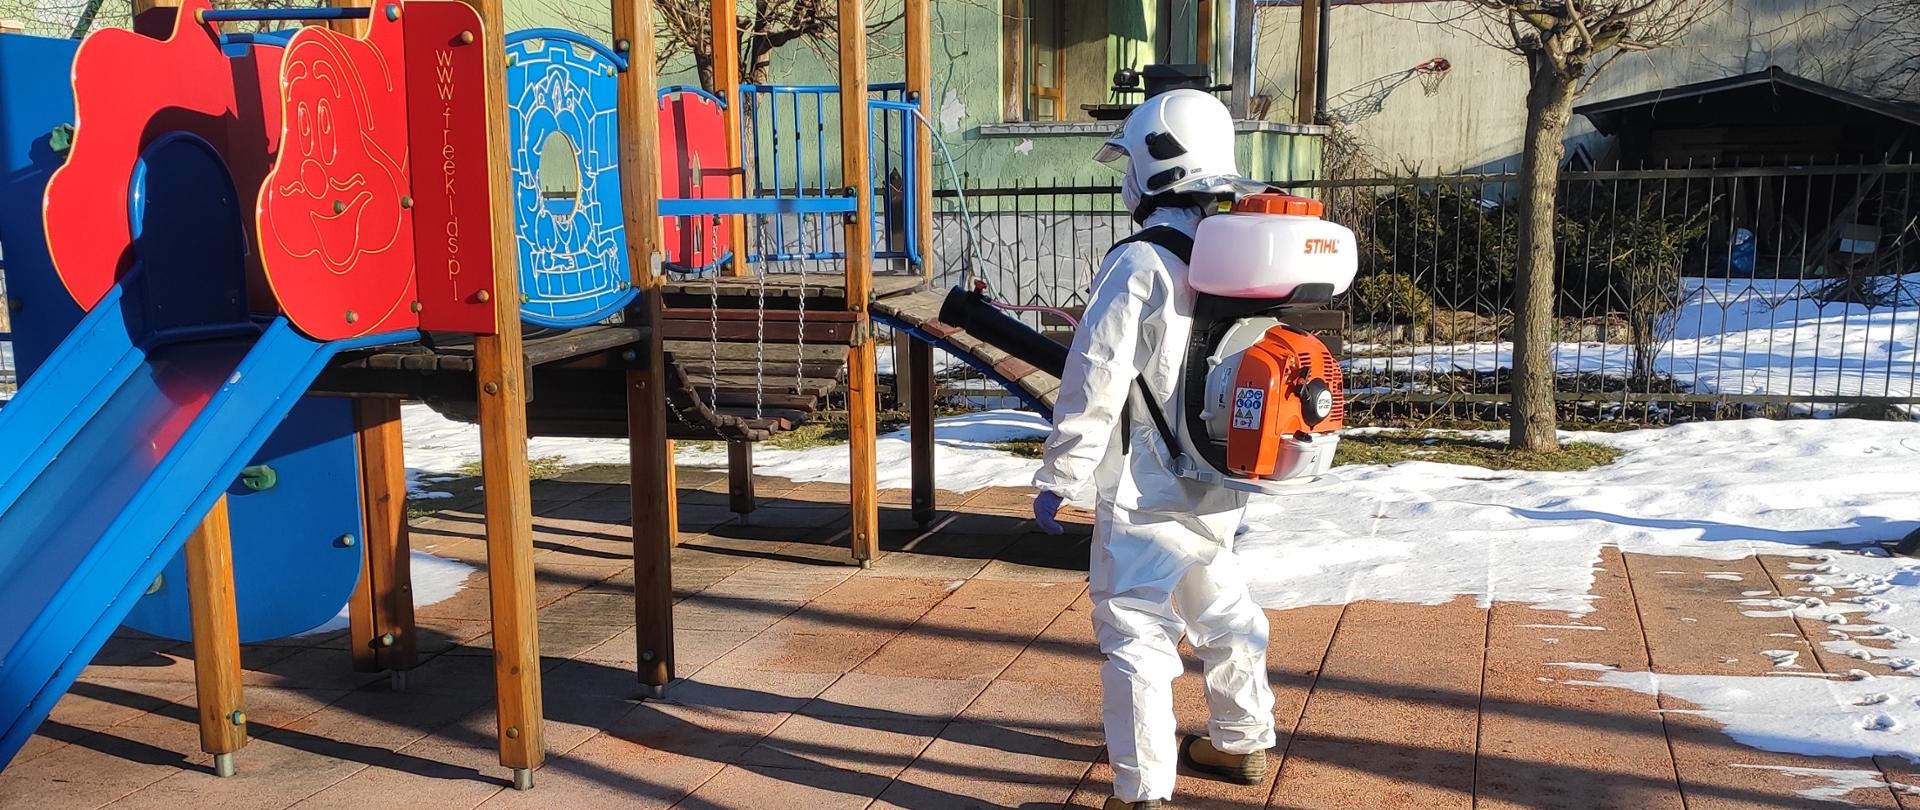 Strażak ubrany w biały struj ochronny przy użyciu opryskiwacza spalinowego dokonuje dezynfekcji zjeżdżalni dla dzieci na placu zabaw